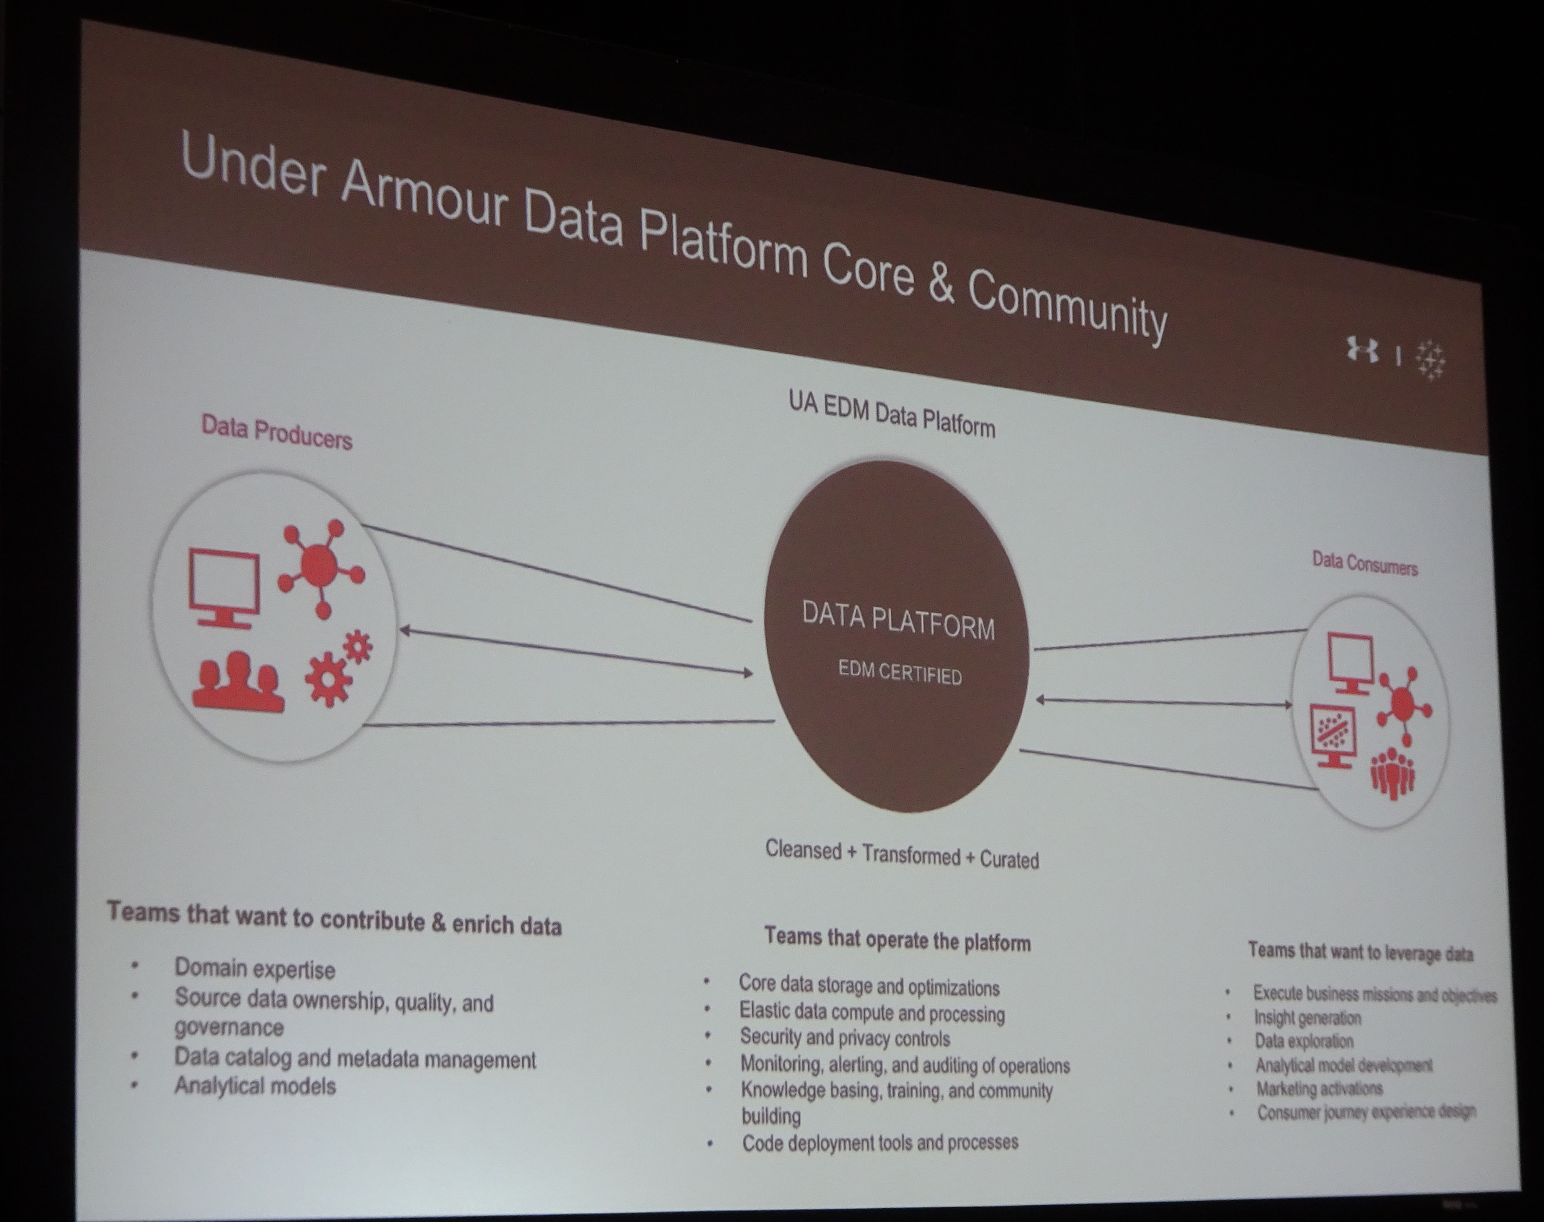 Under Armour's data platform